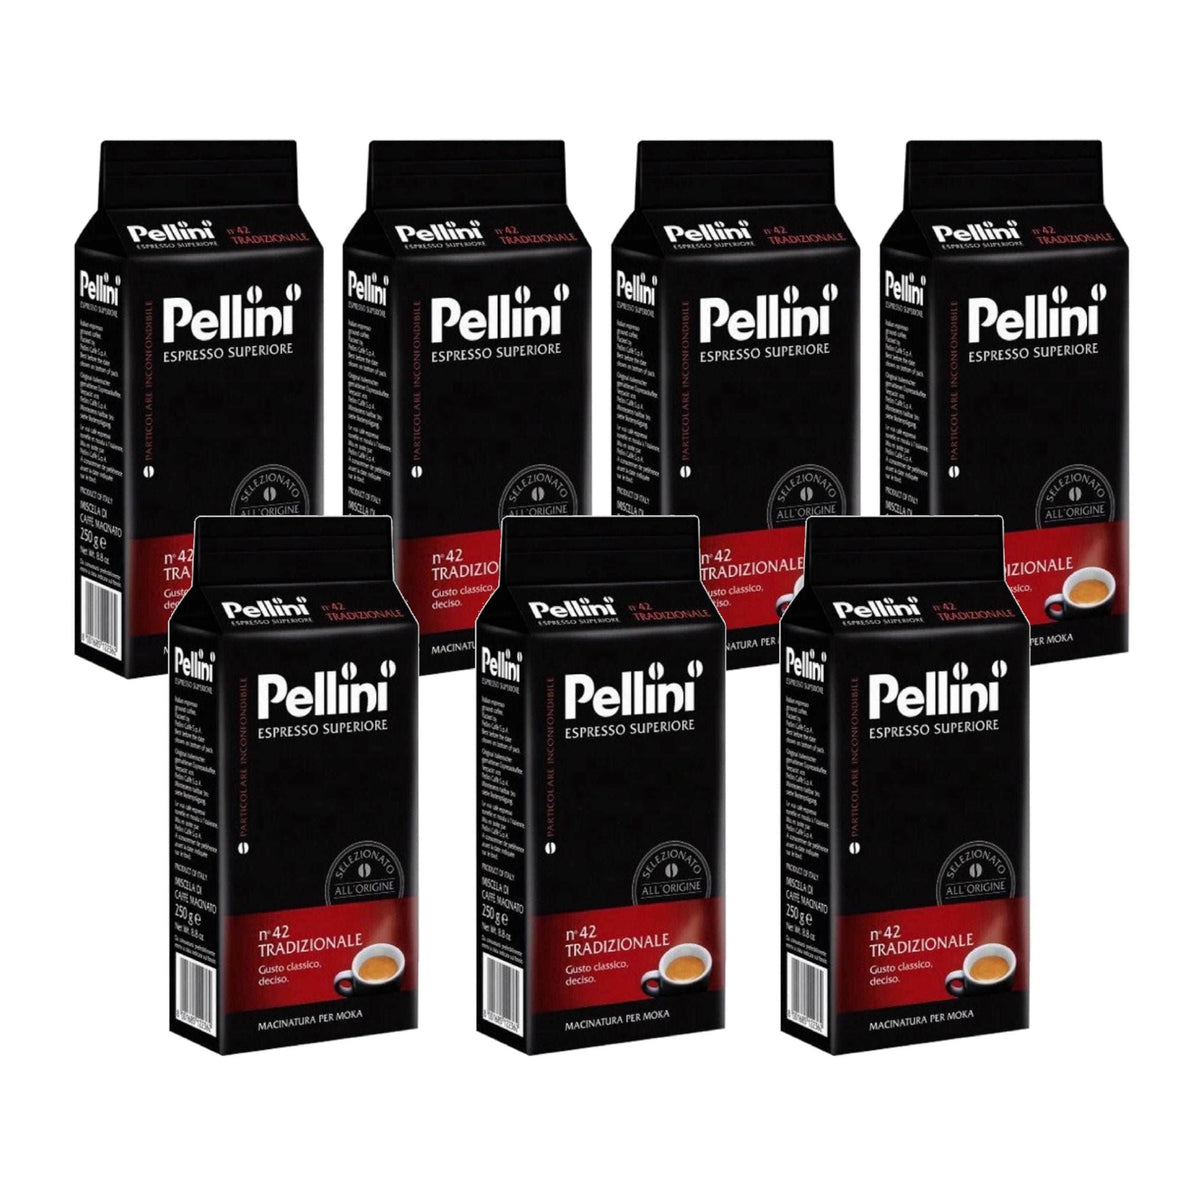 Produkt PELLINI Kawa mielona 7x Kawa mielona PELLINI espresso n&#39;42 Tradizionale 250g K_S00151_7